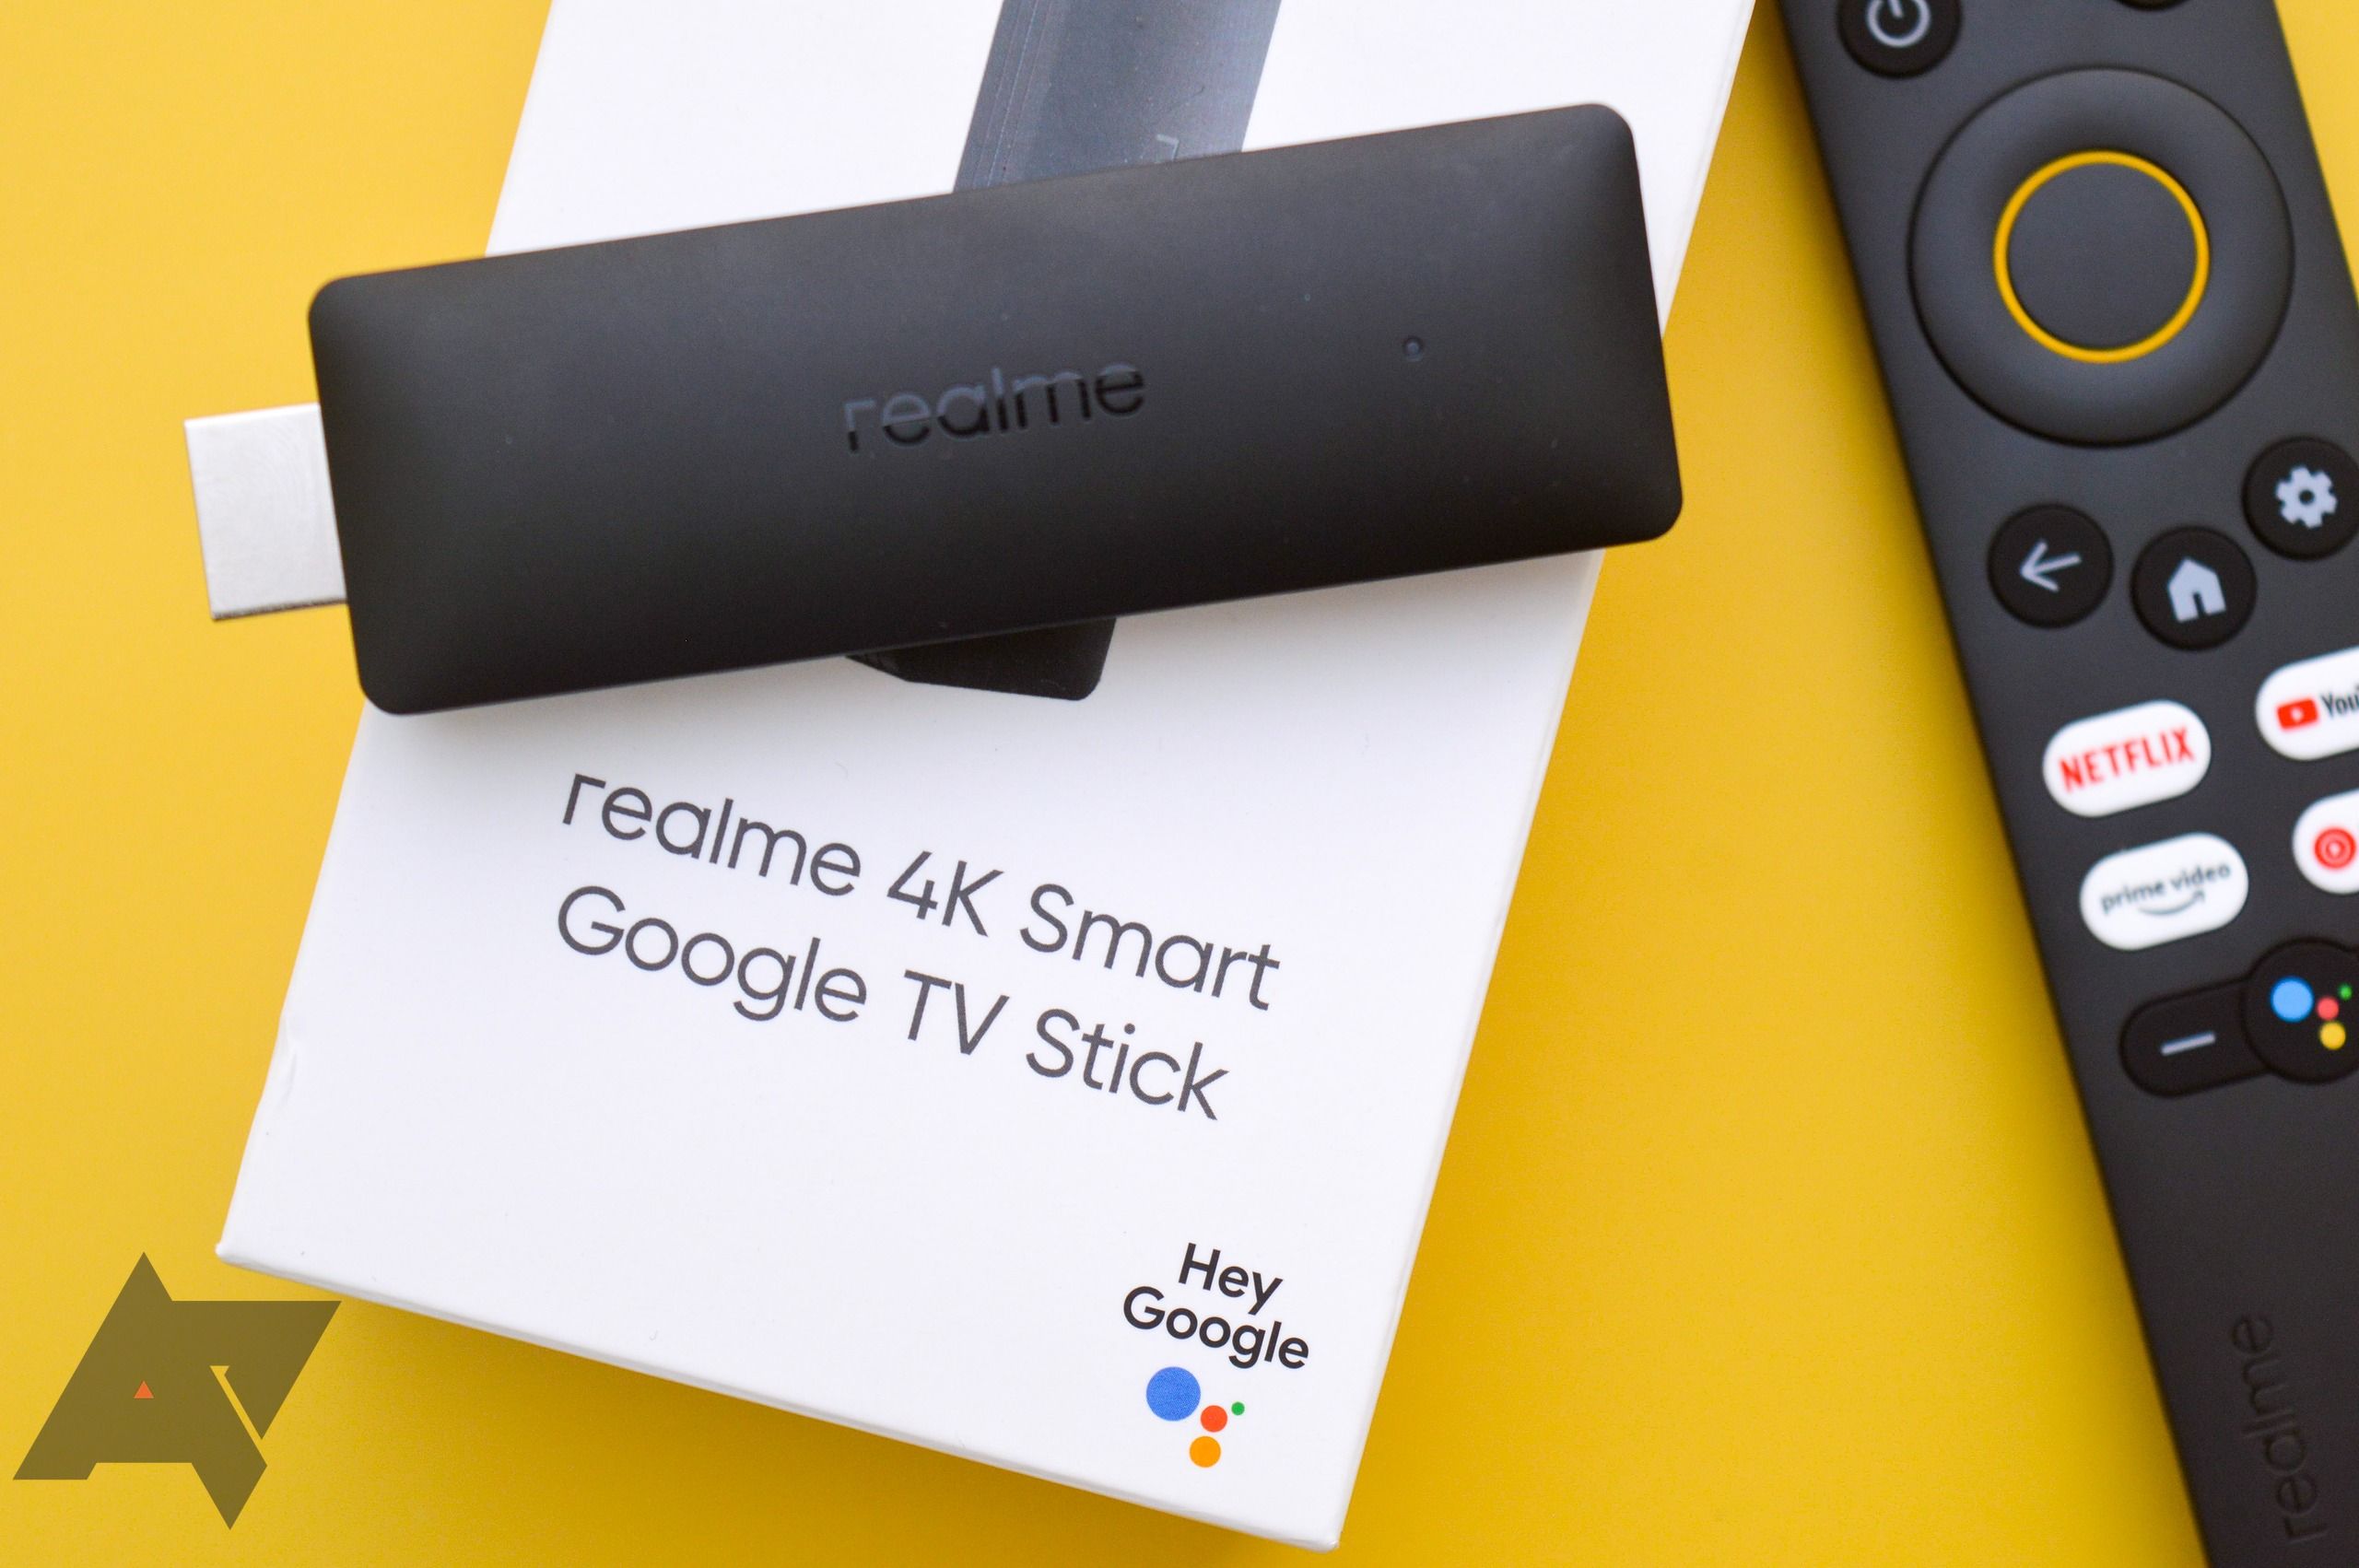 Realme 4K Smart Google TV Stick review 12